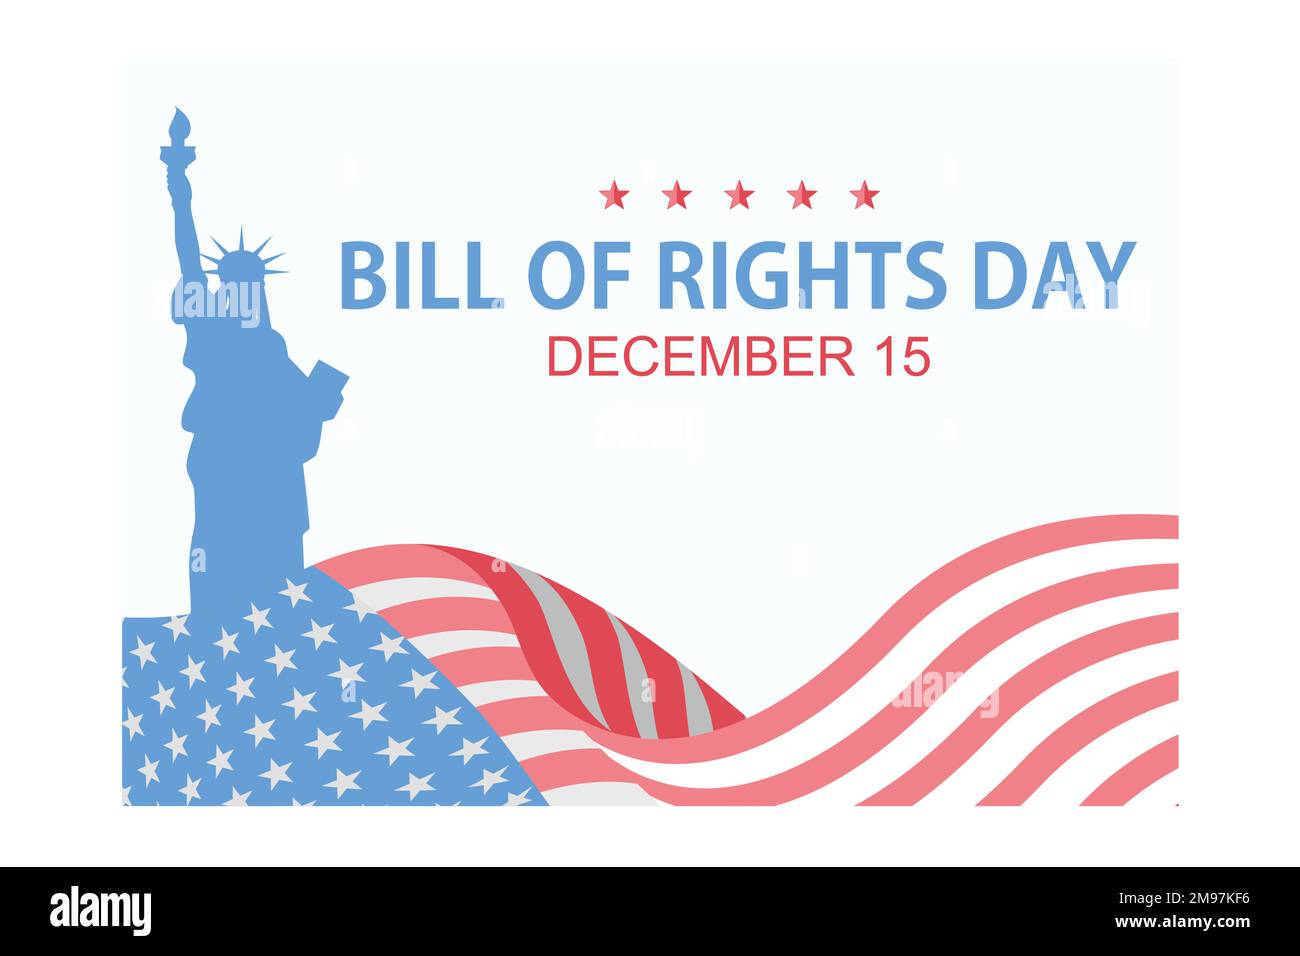 Bill of Rights Day negli Stati Uniti, commemorazione della ratifica dei primi 10 emendamenti alla Costituzione degli Stati Uniti. Dicembre 15, piatto Vect Illustrazione Vettoriale